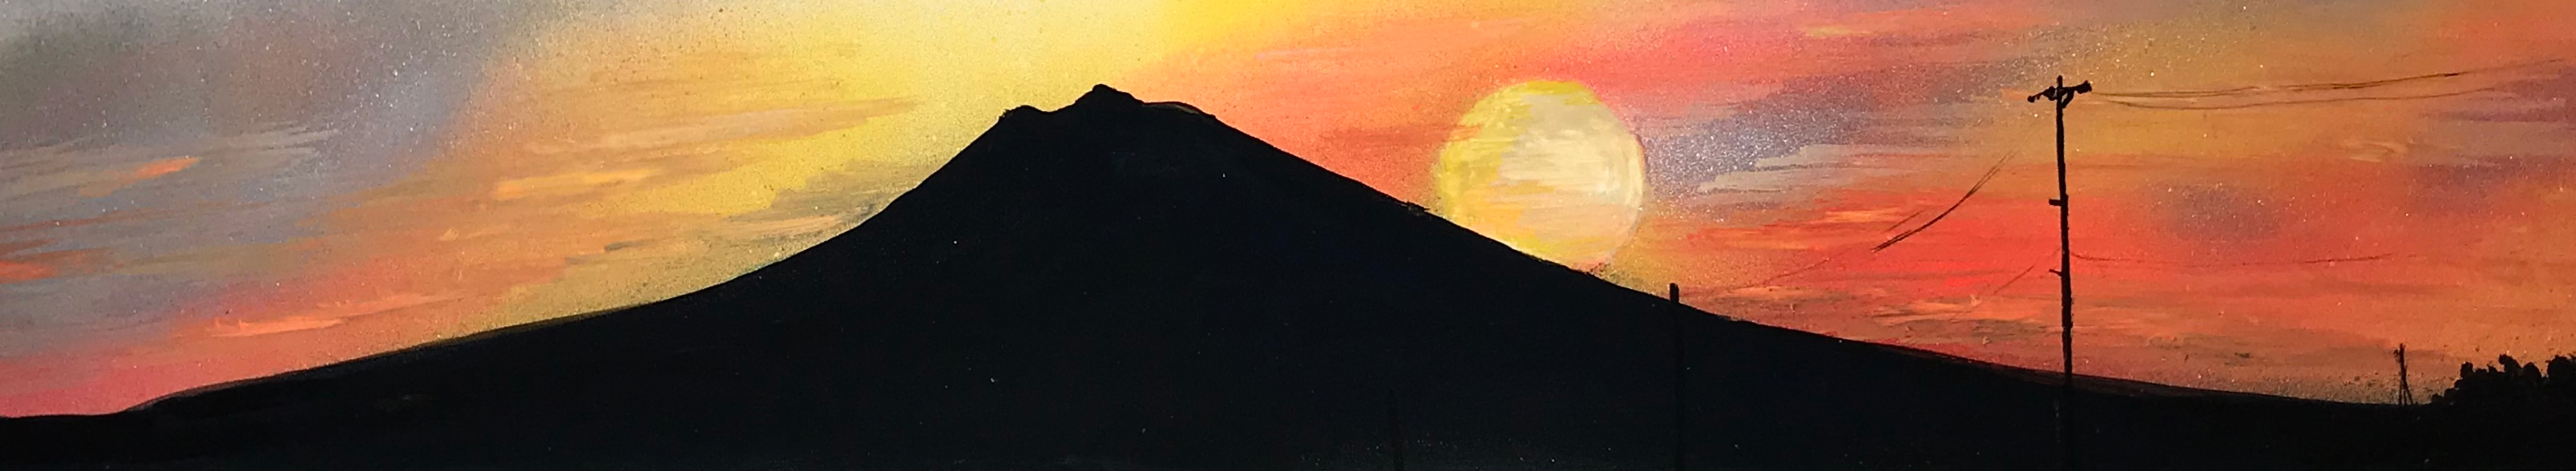 岩木山と夕日のアート